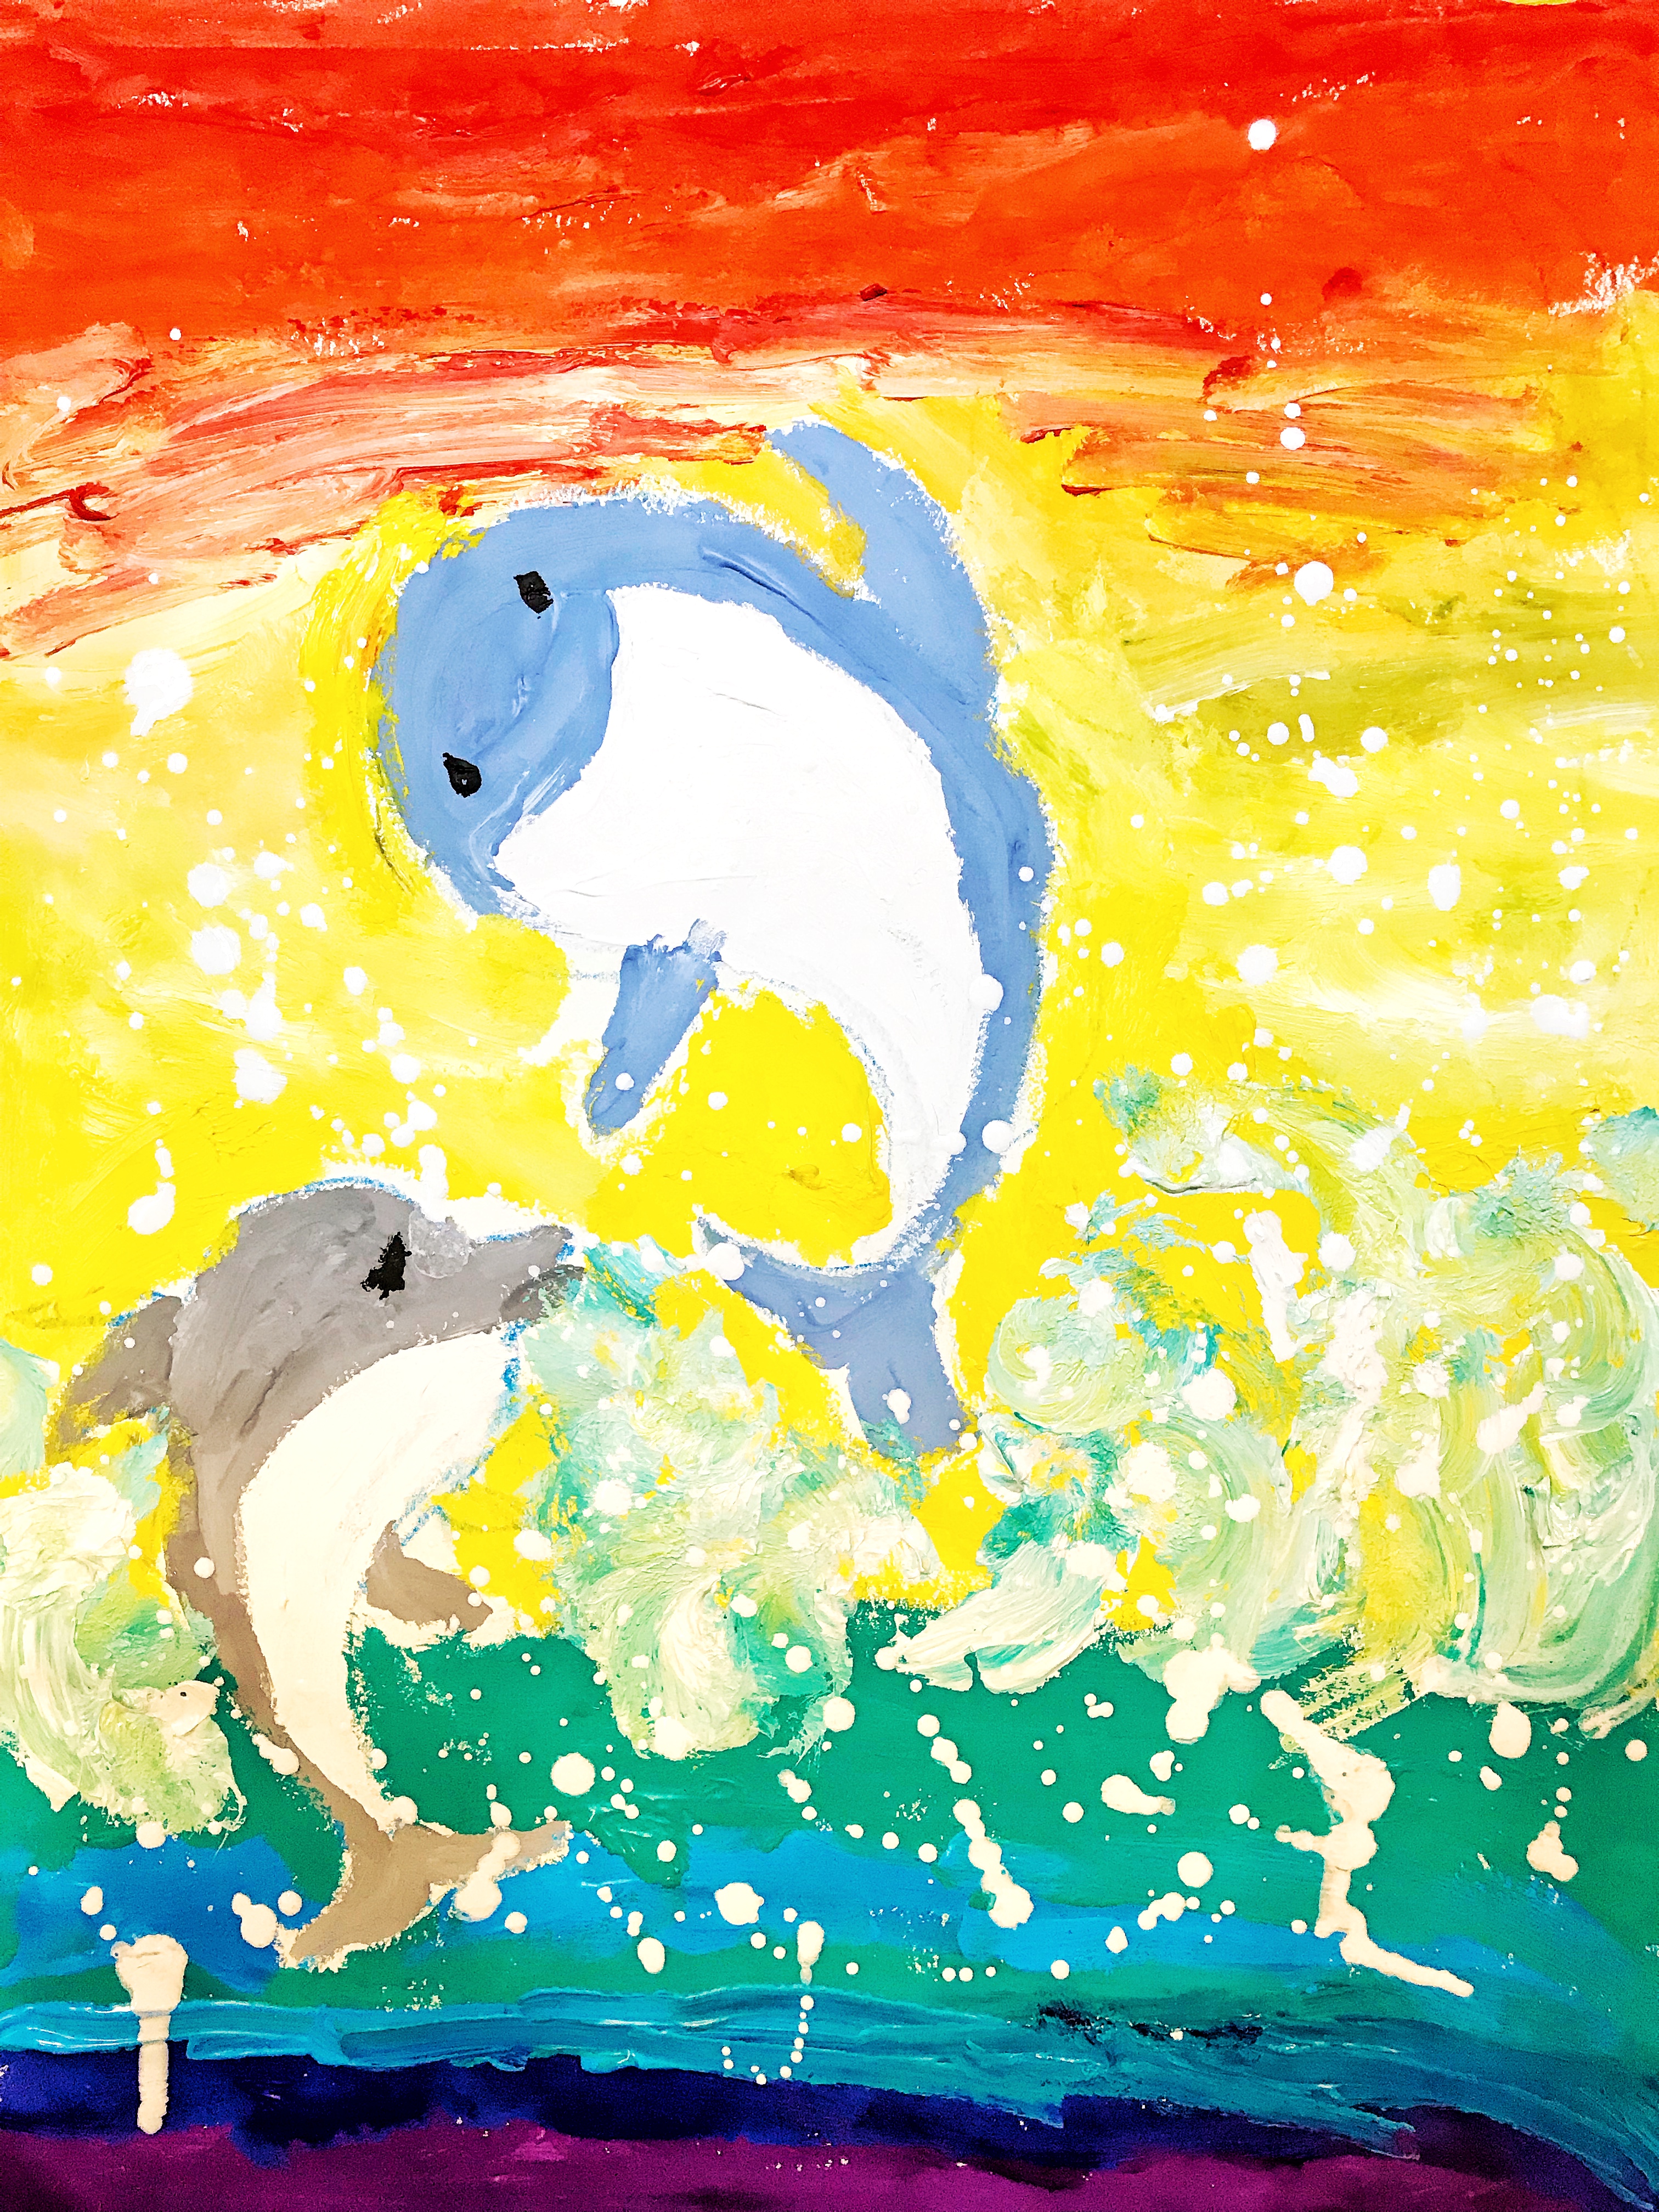 编号:25208 作品题目:海豚 作品形式(如:油画,国画等):水粉 作者姓名